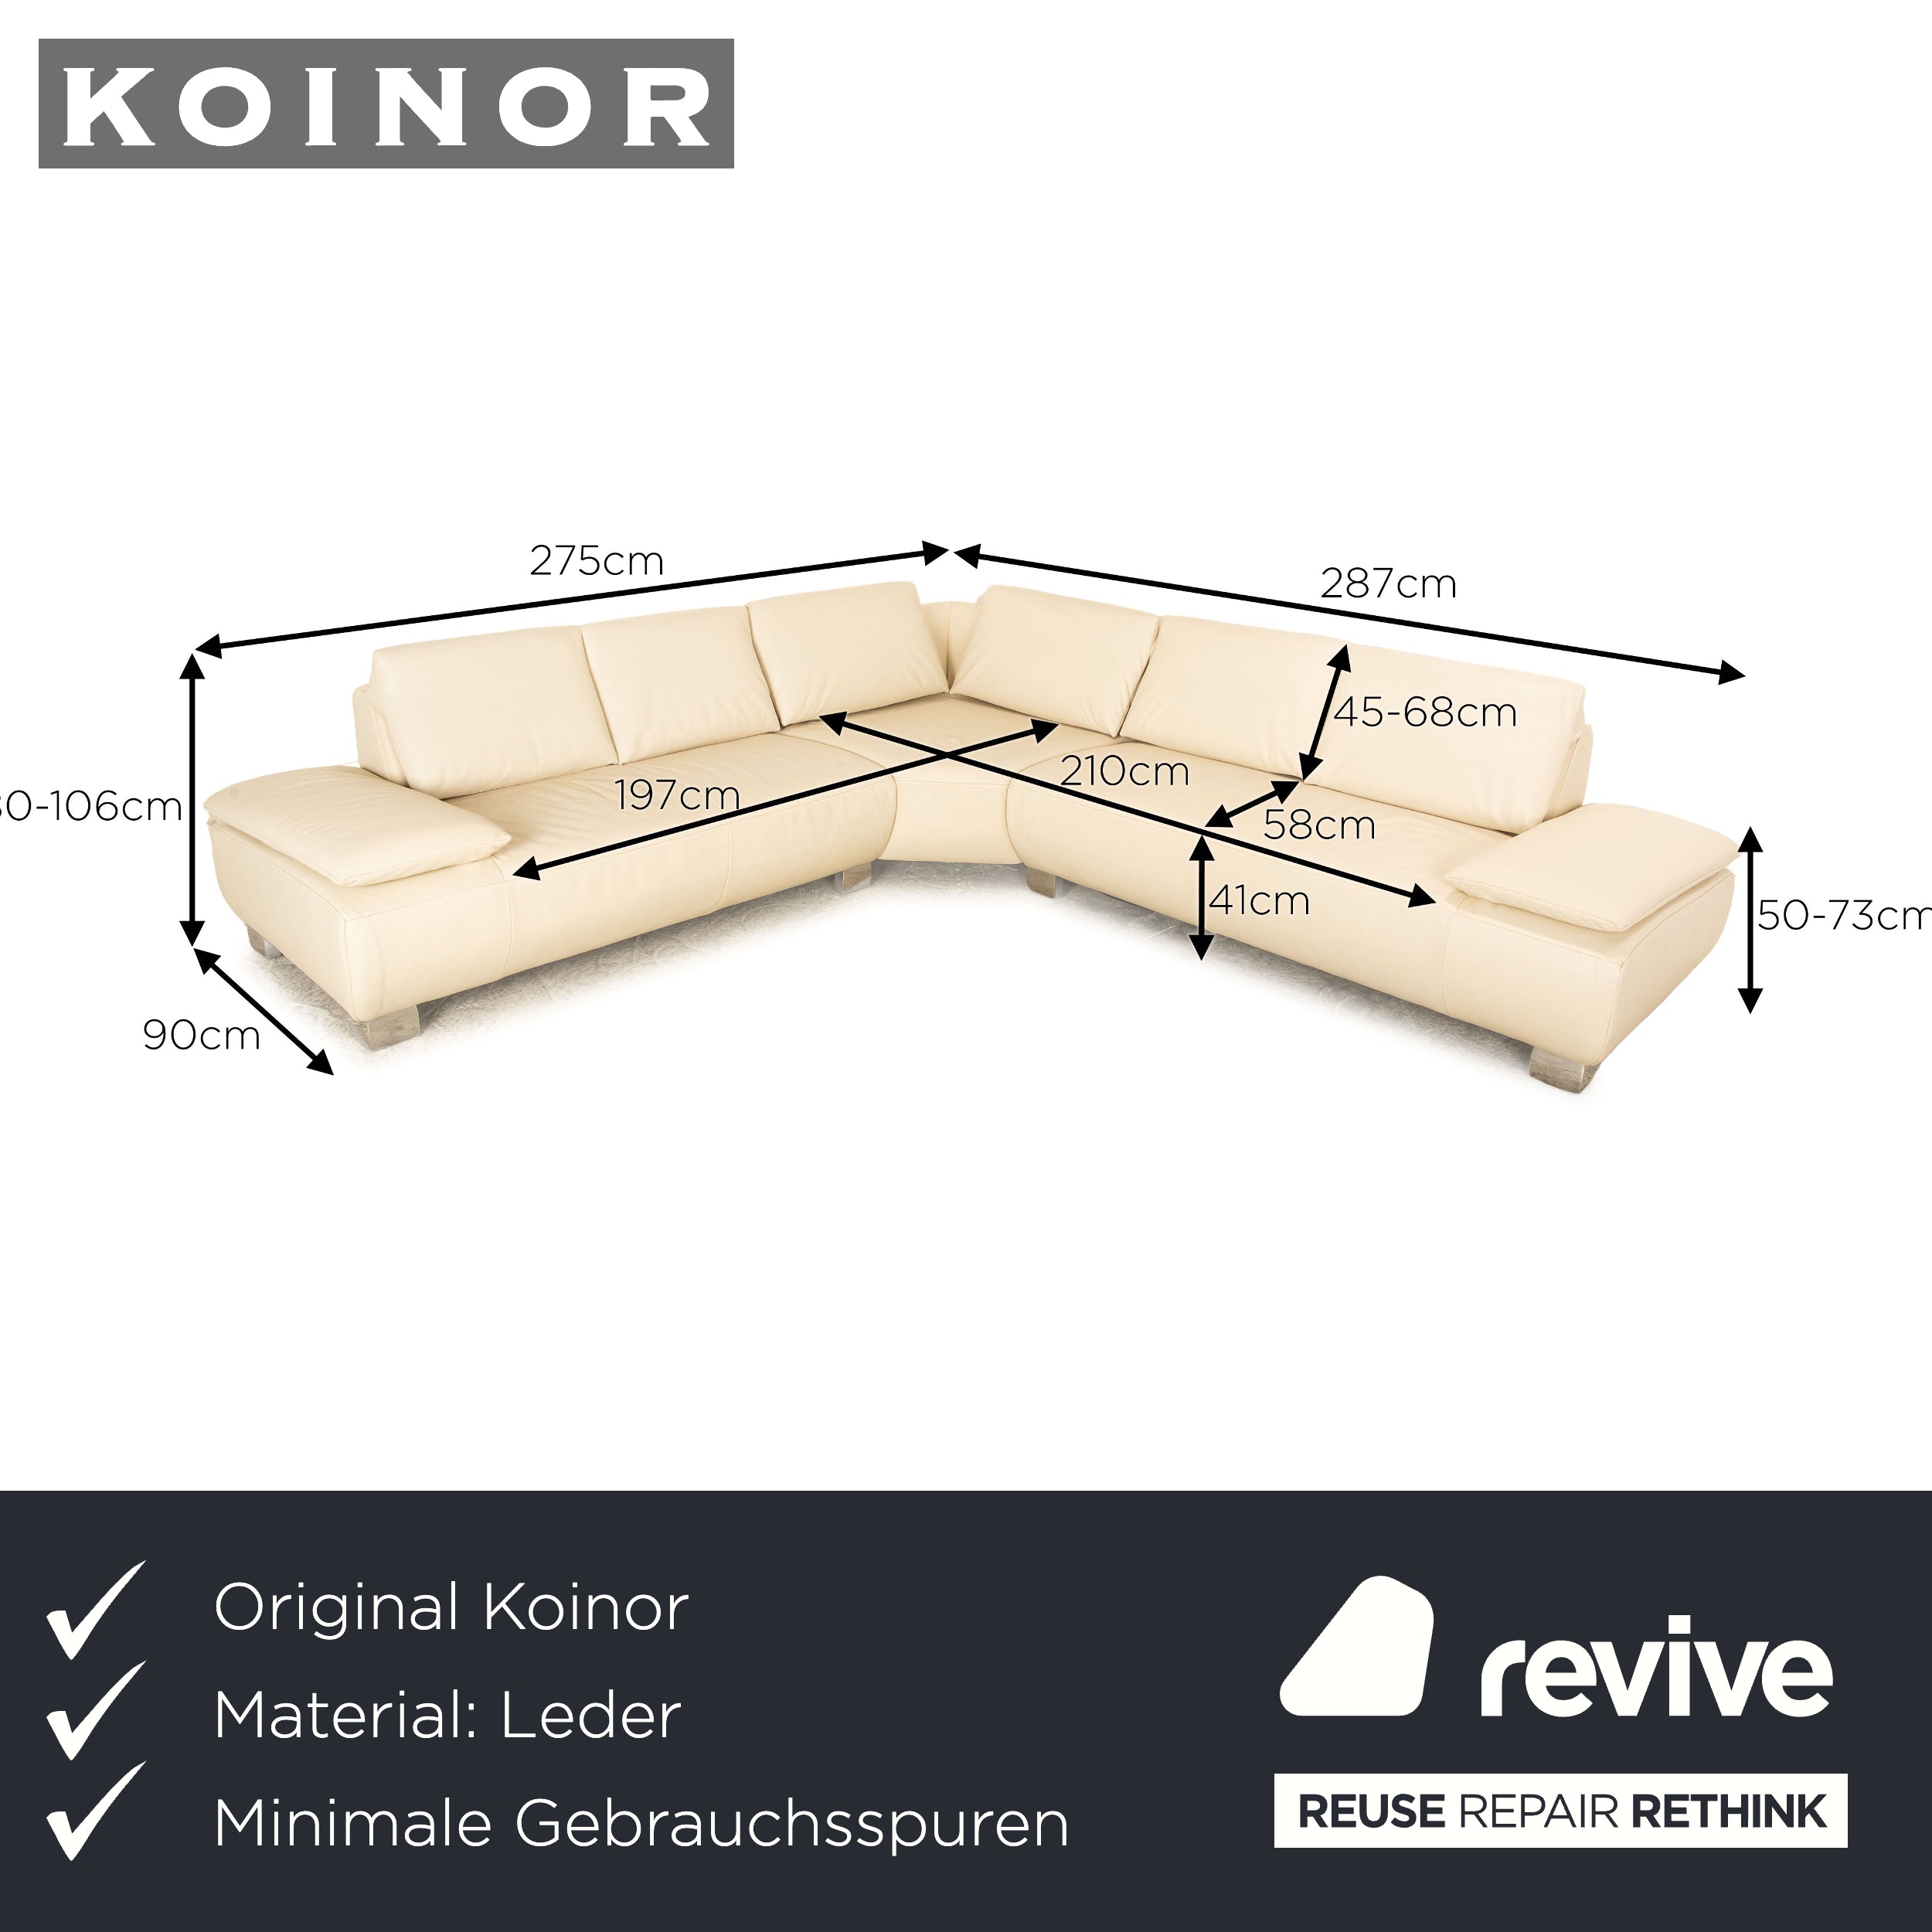 Koinor Volare Leather Corner Sofa Cream Sofa Couch